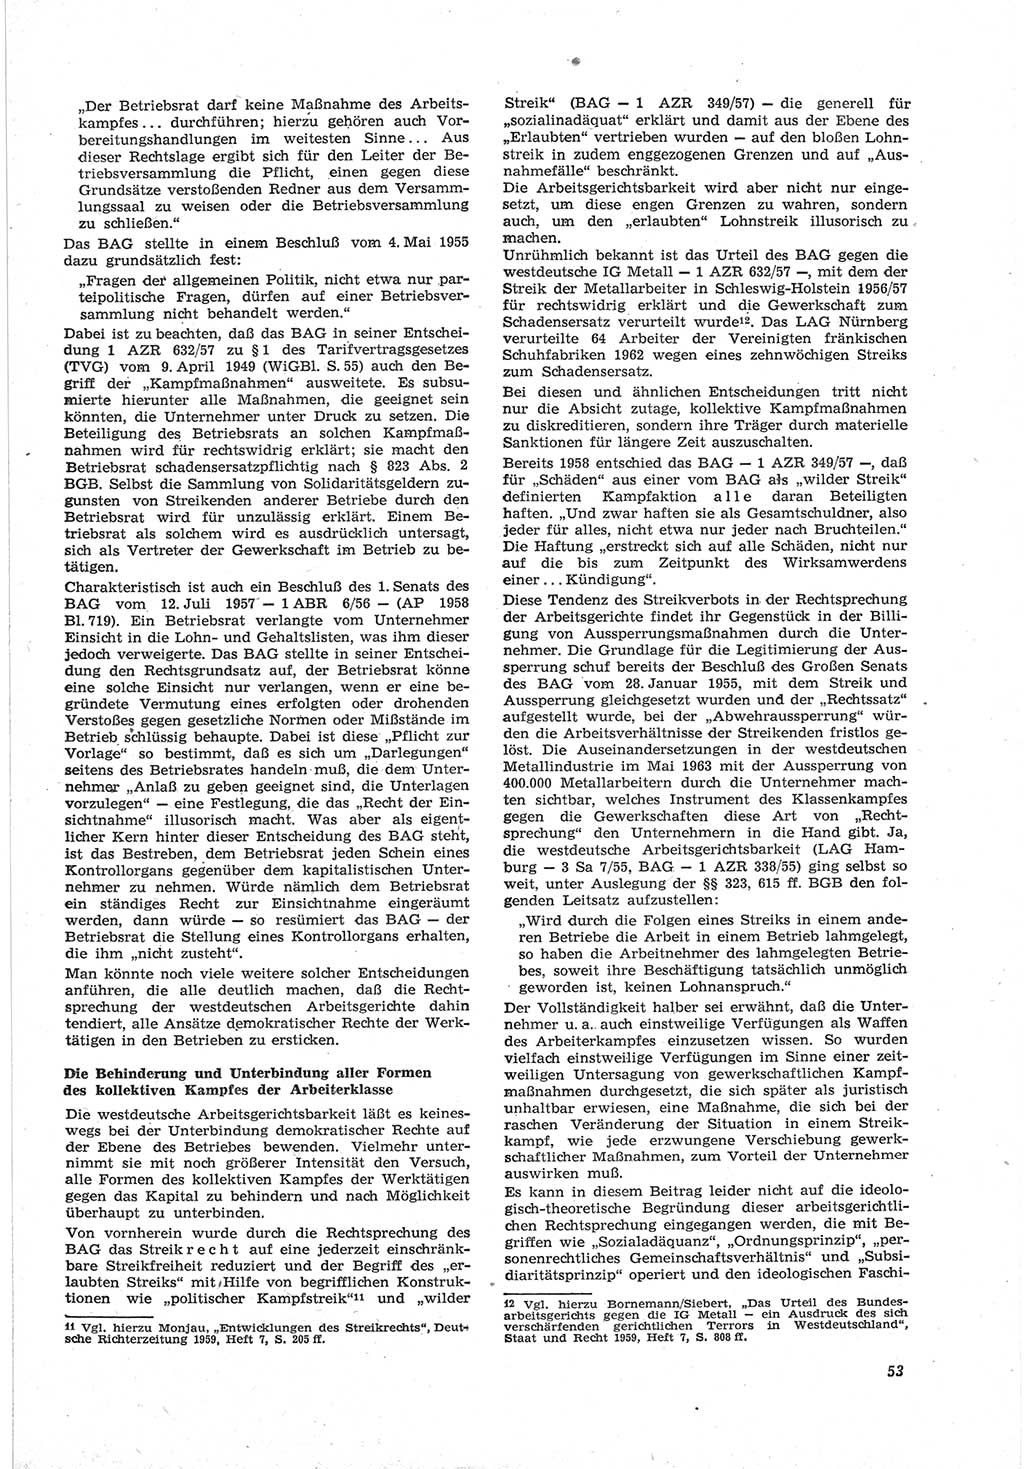 Neue Justiz (NJ), Zeitschrift für Recht und Rechtswissenschaft [Deutsche Demokratische Republik (DDR)], 18. Jahrgang 1964, Seite 53 (NJ DDR 1964, S. 53)